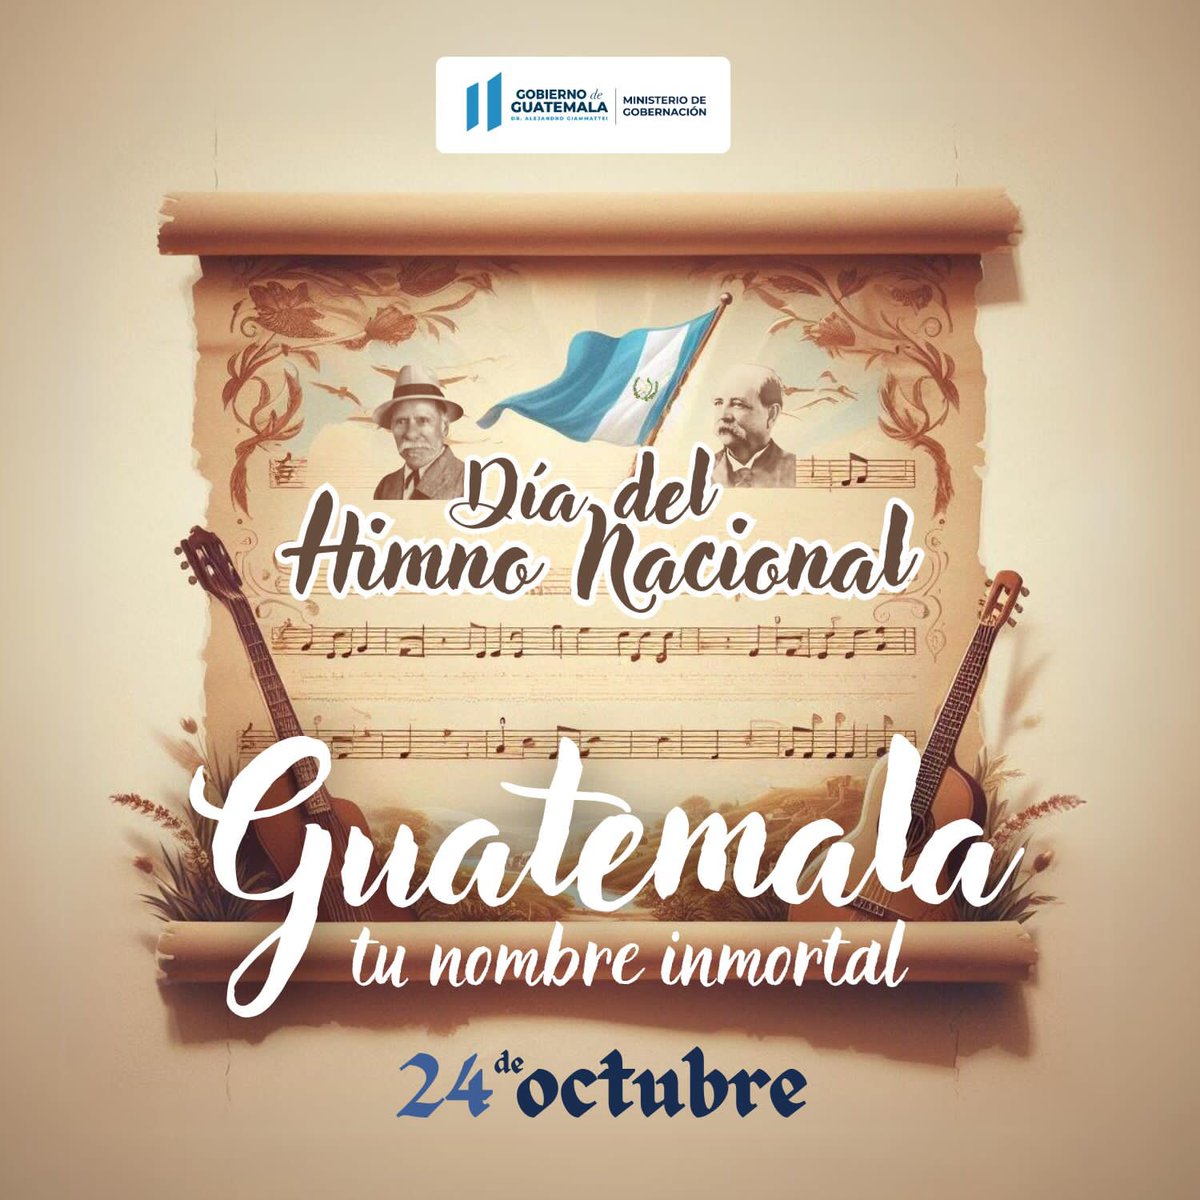 Hoy 24 de octubre el Ministerio de Gobernación se une a las celebraciones del #DíaNacionalDelHimno, recordando con orgullo nuestras raíces y valores como guatemaltecos. 💙🇬🇹